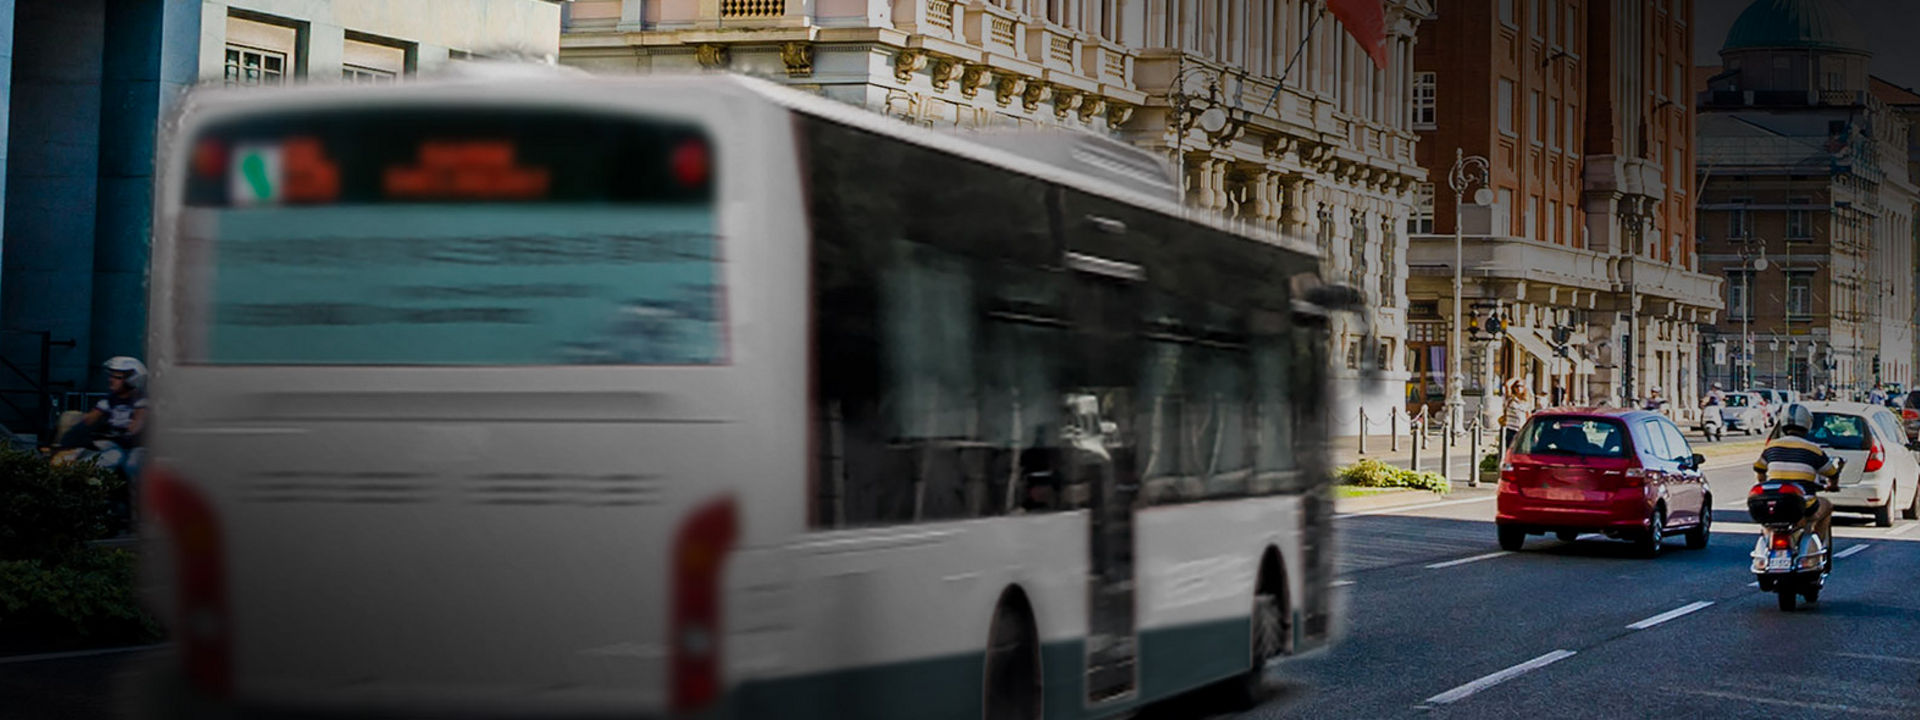 Esta imagem mostra a traseira de um autocarro urbano com pneus Bridgestone no centro da cidade.